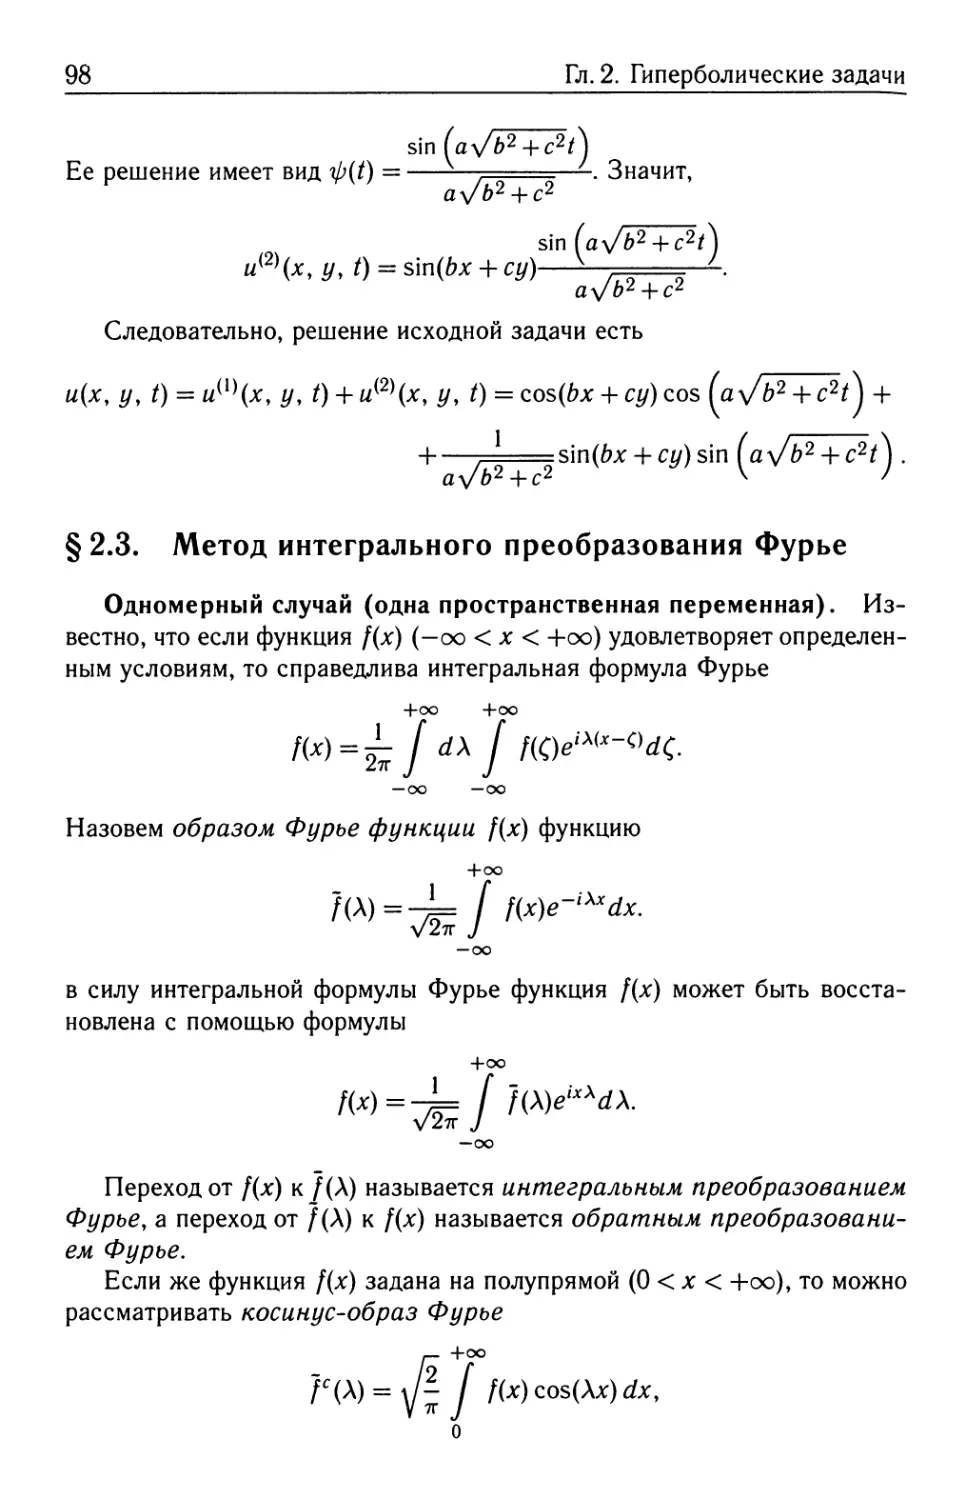 § 2.3. Метод интегрального преобразования Фурье